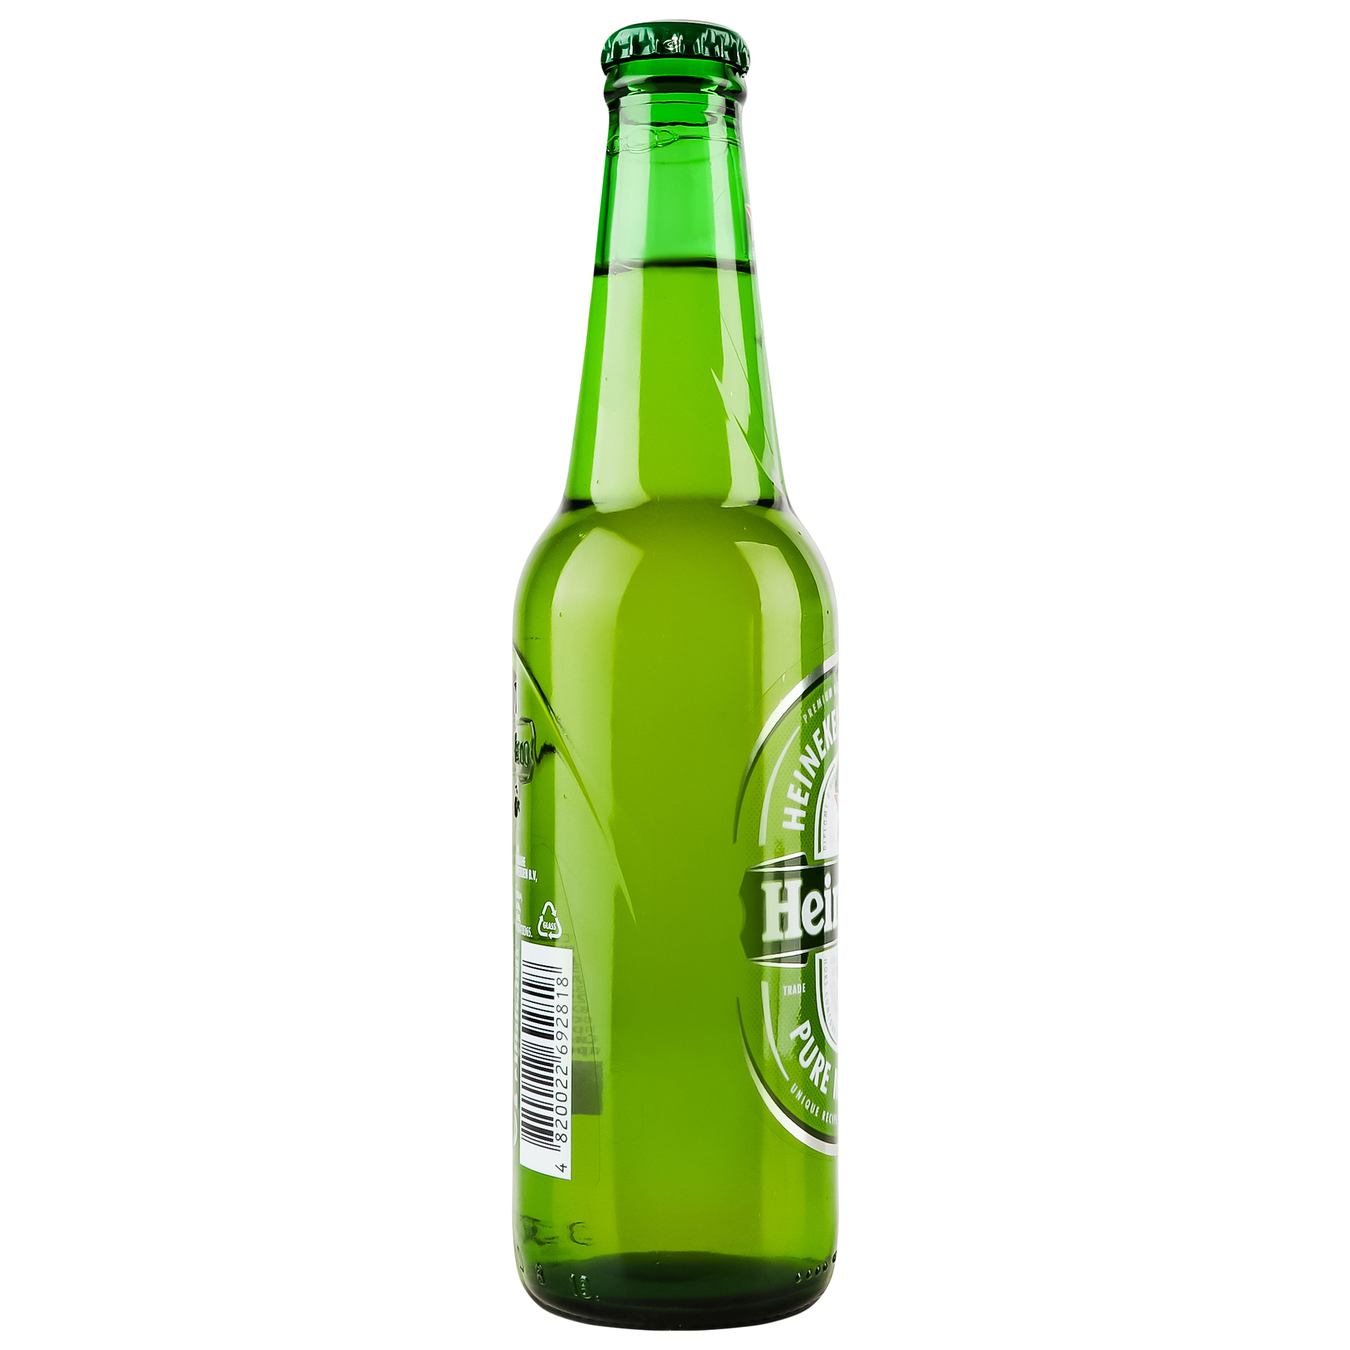 Heineken light filtered pasteurized beer 5% 0,33l 3